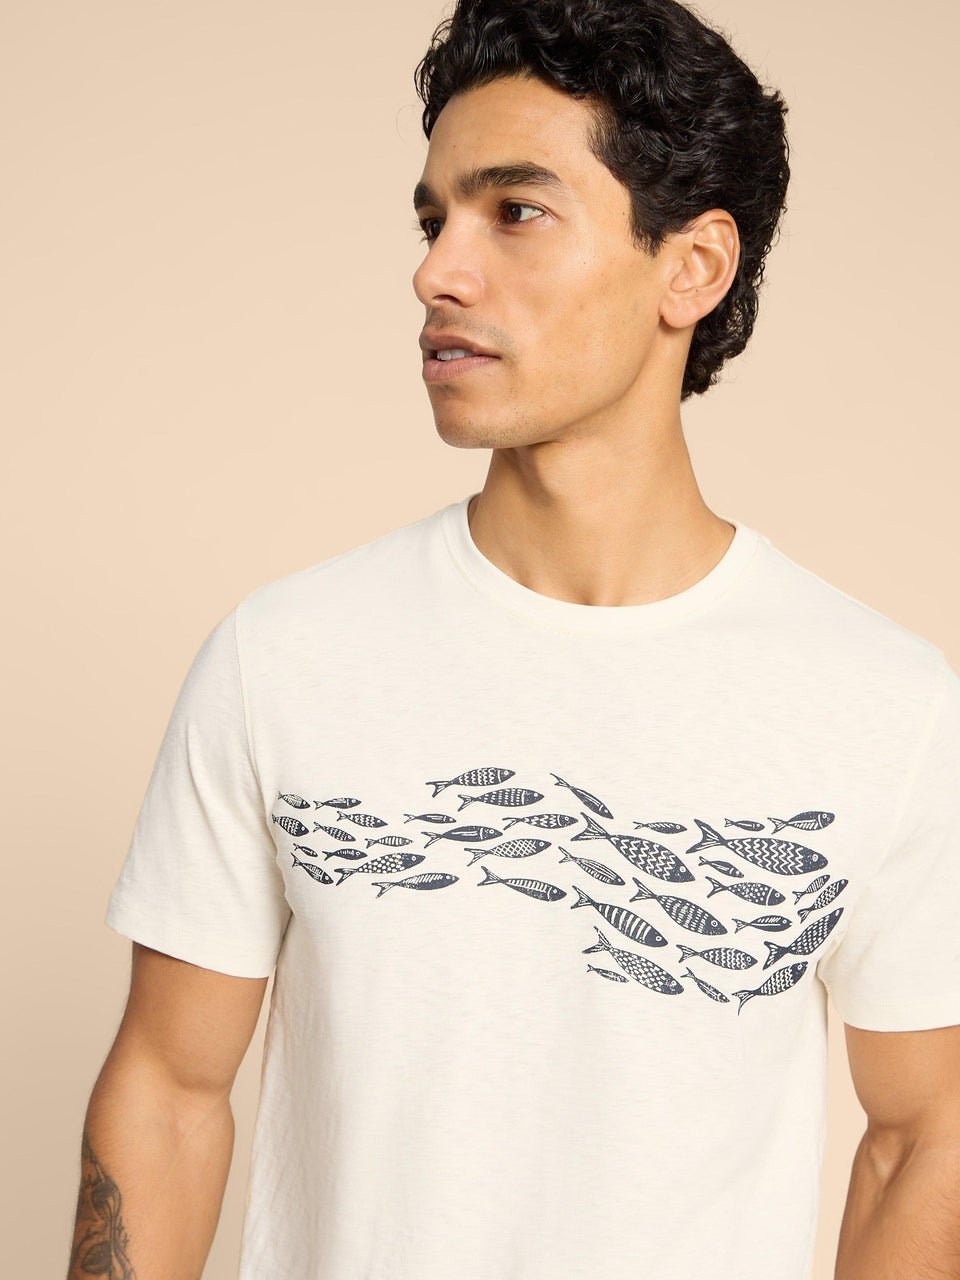 T-Shirt mit Fischmotiv